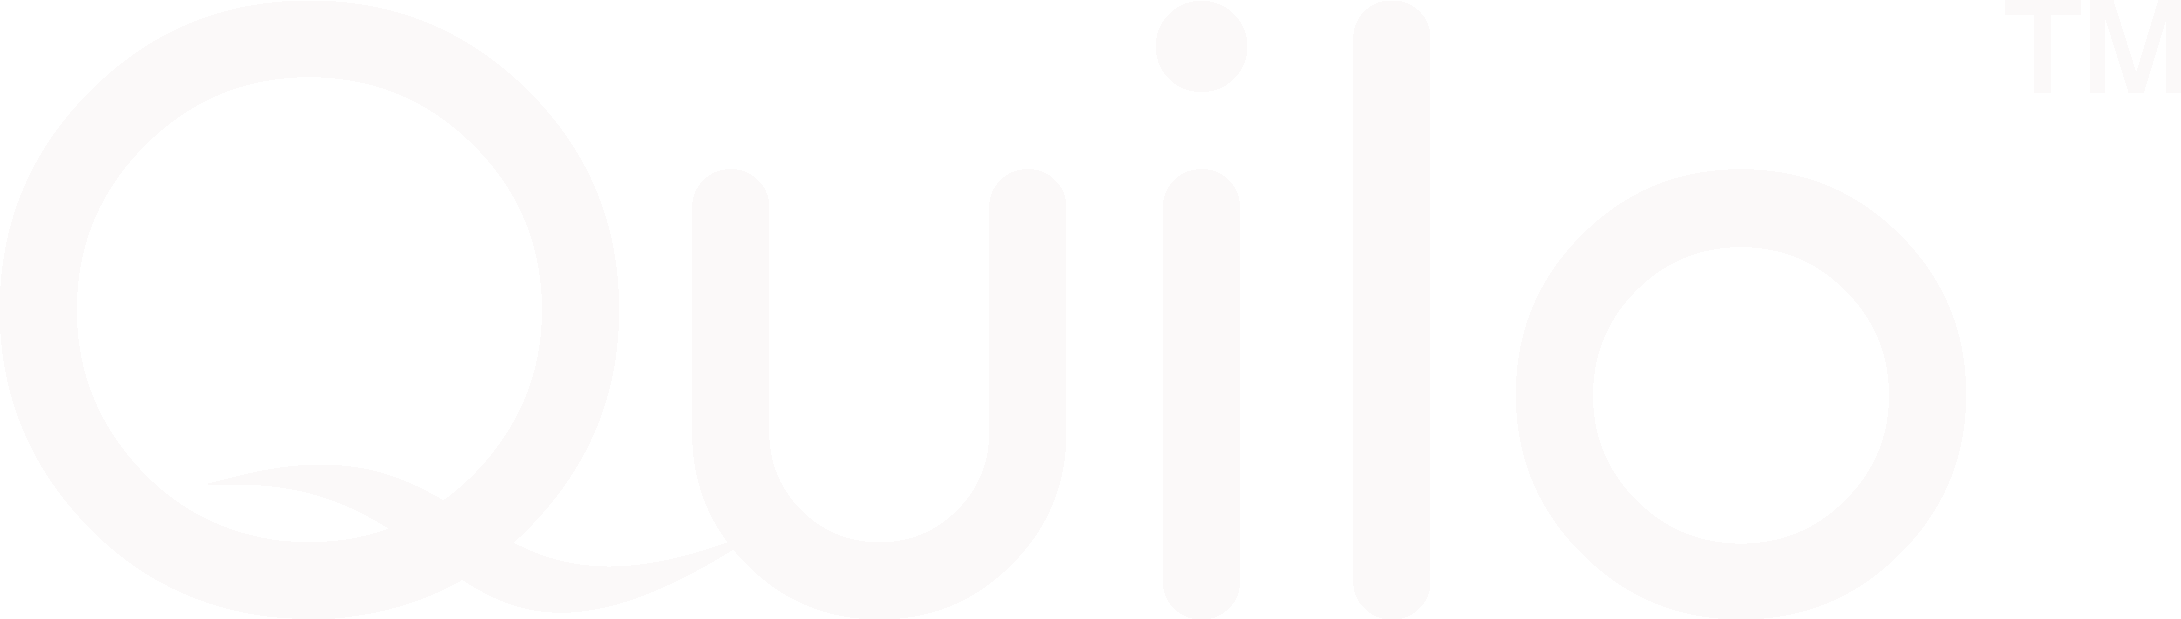 quilo-logo_white_transparent